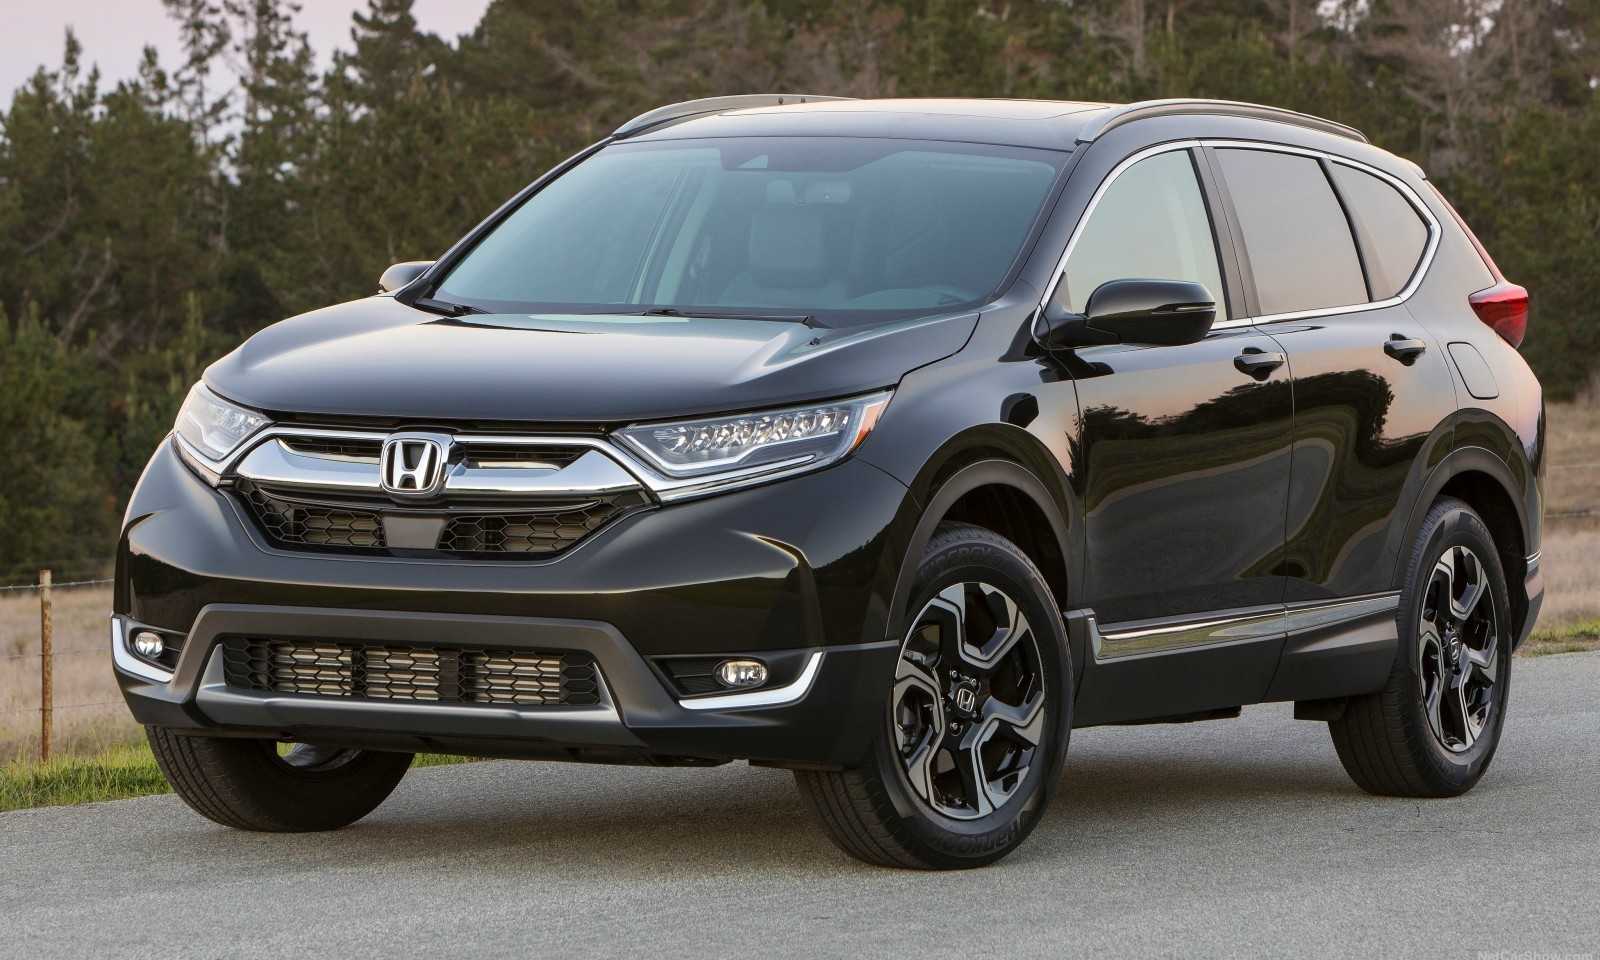 10 mẫu xe SUV bán chạy nhất tại Mỹ trong quý 1 năm 2020, Honda CR-V